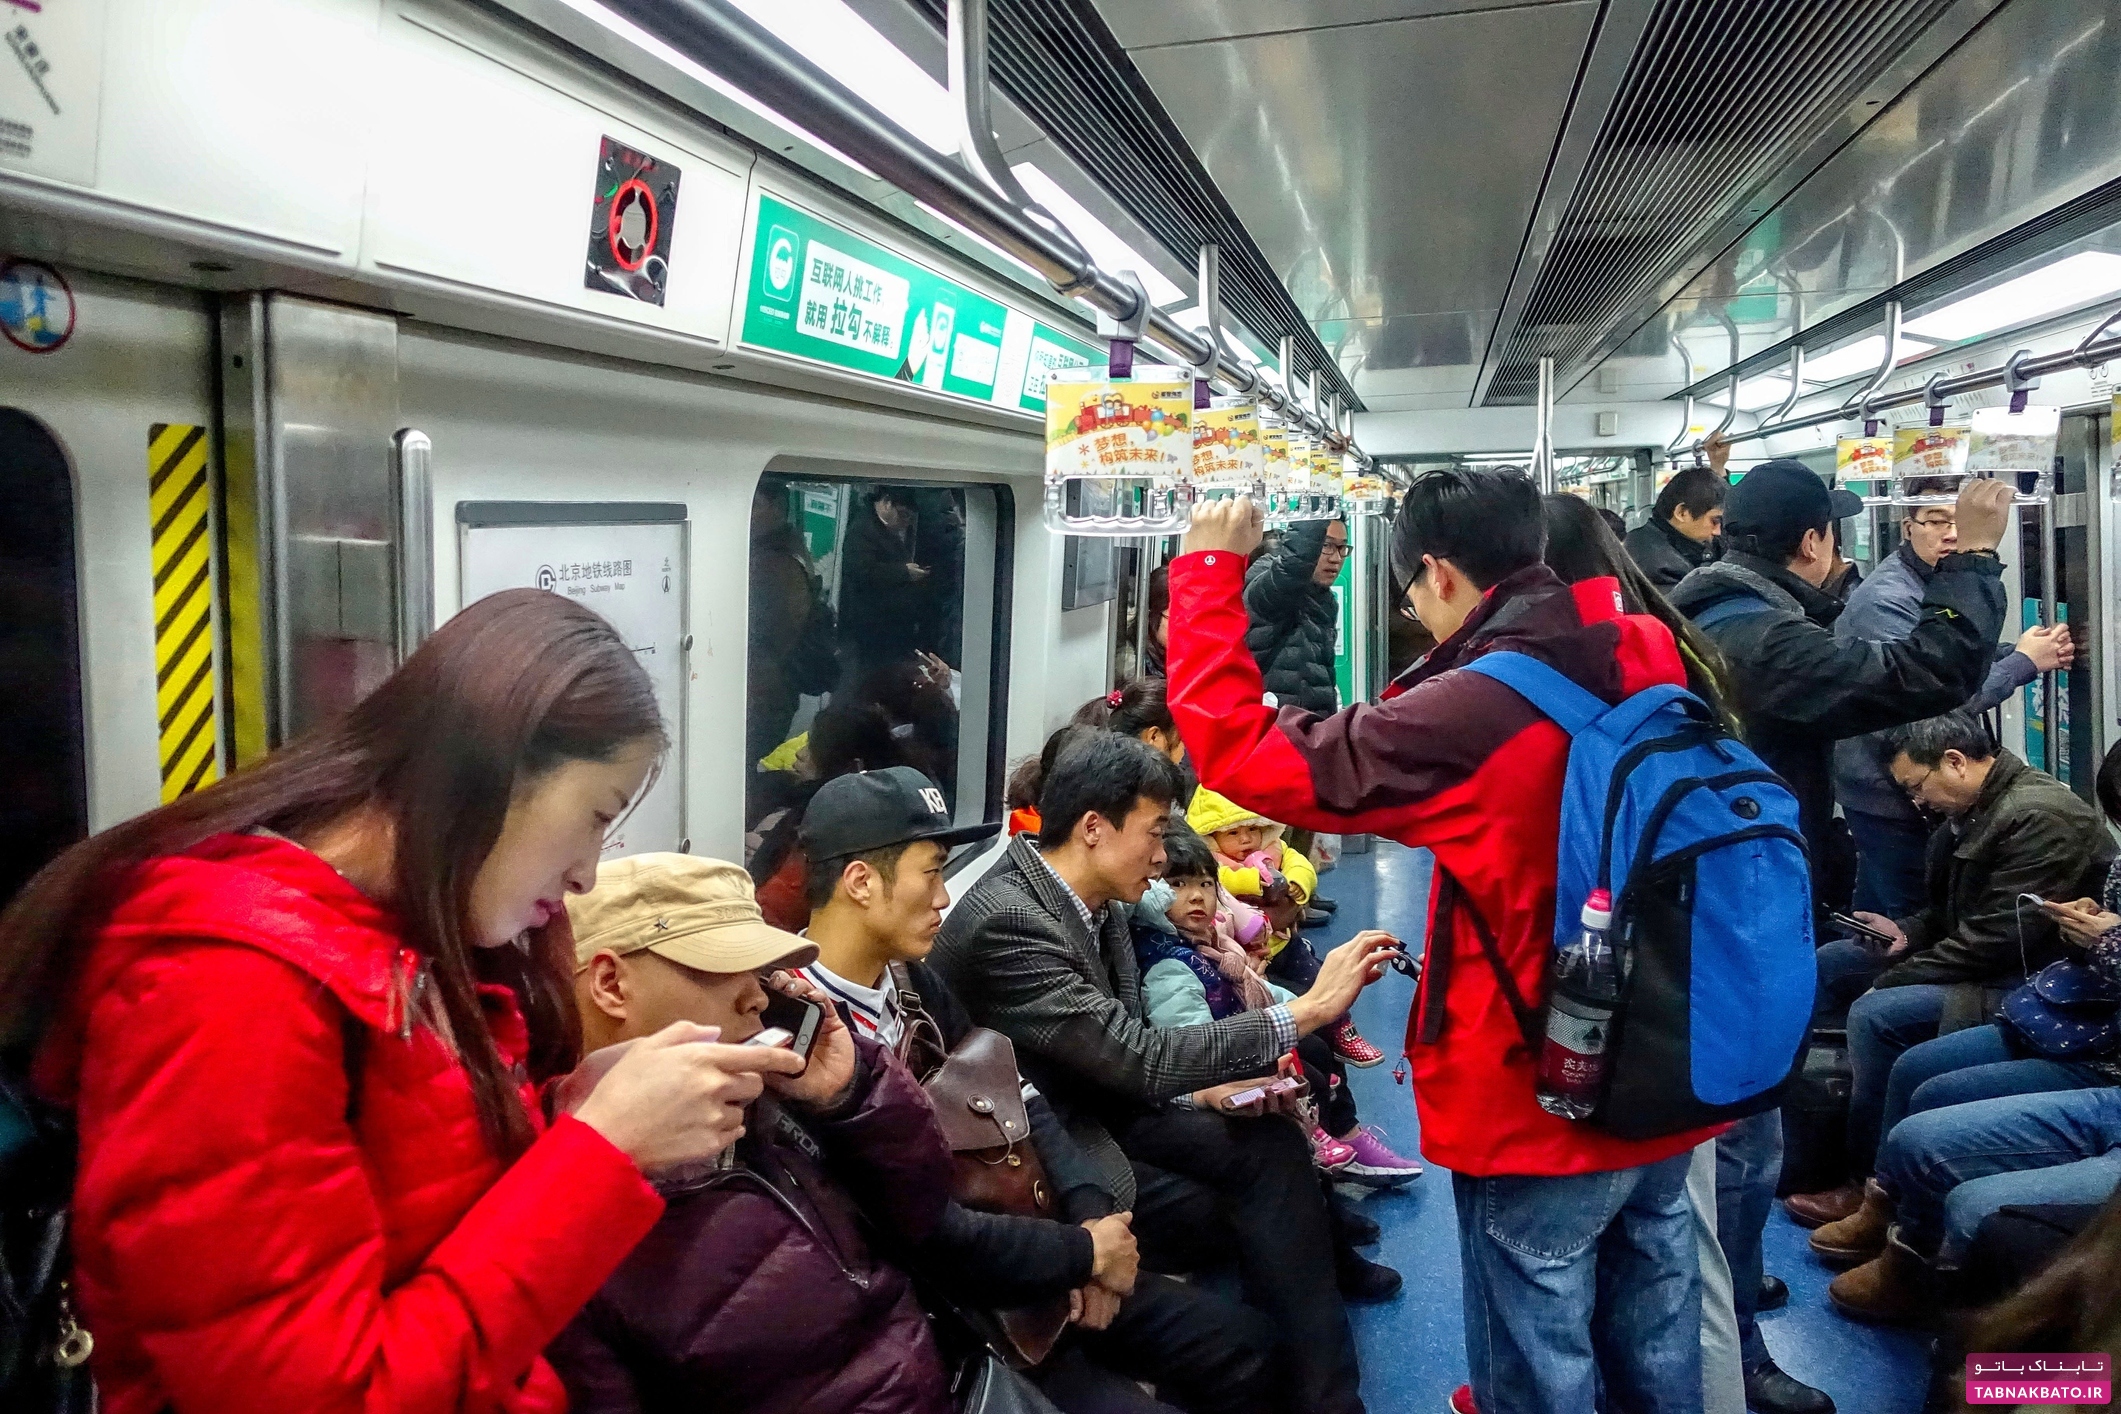 درخواست متروی چین از زنان، جنجالی شد